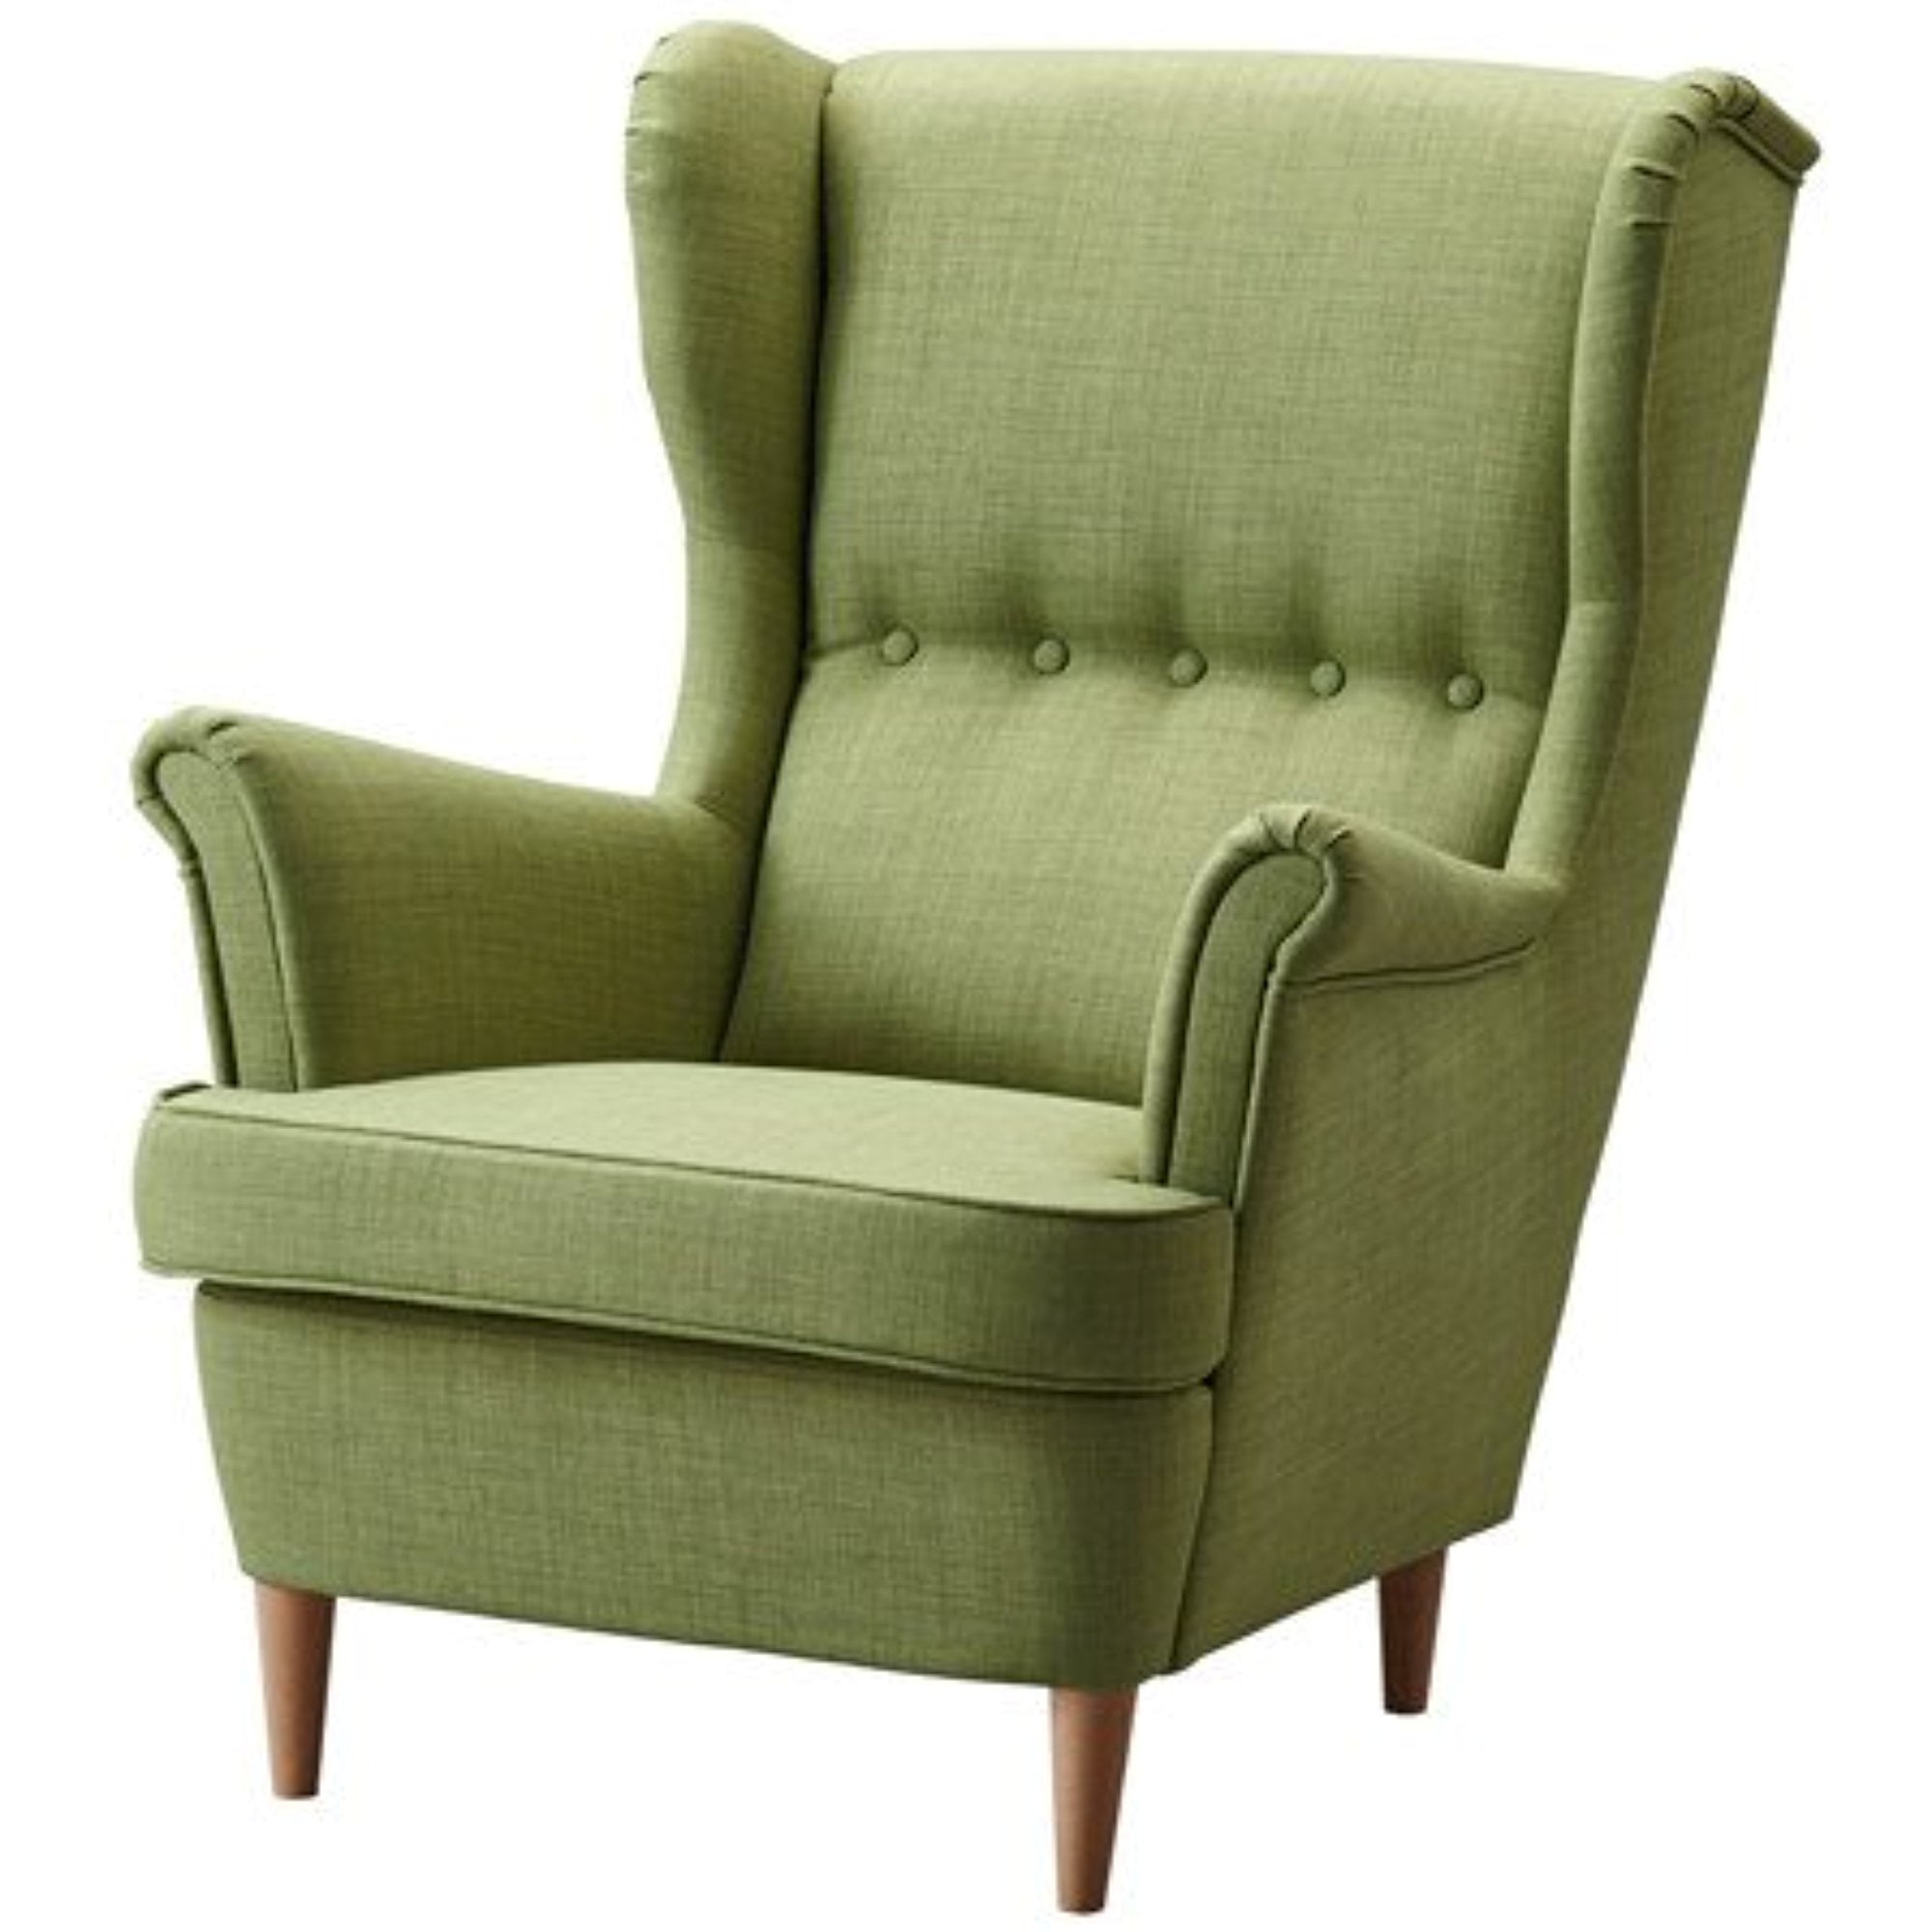 Мягкие кресла каталог. Кресло Strandmon ikea. Икеа кресло СТРАНДМОН зеленый. СТРАНДМОН Шифтебу.